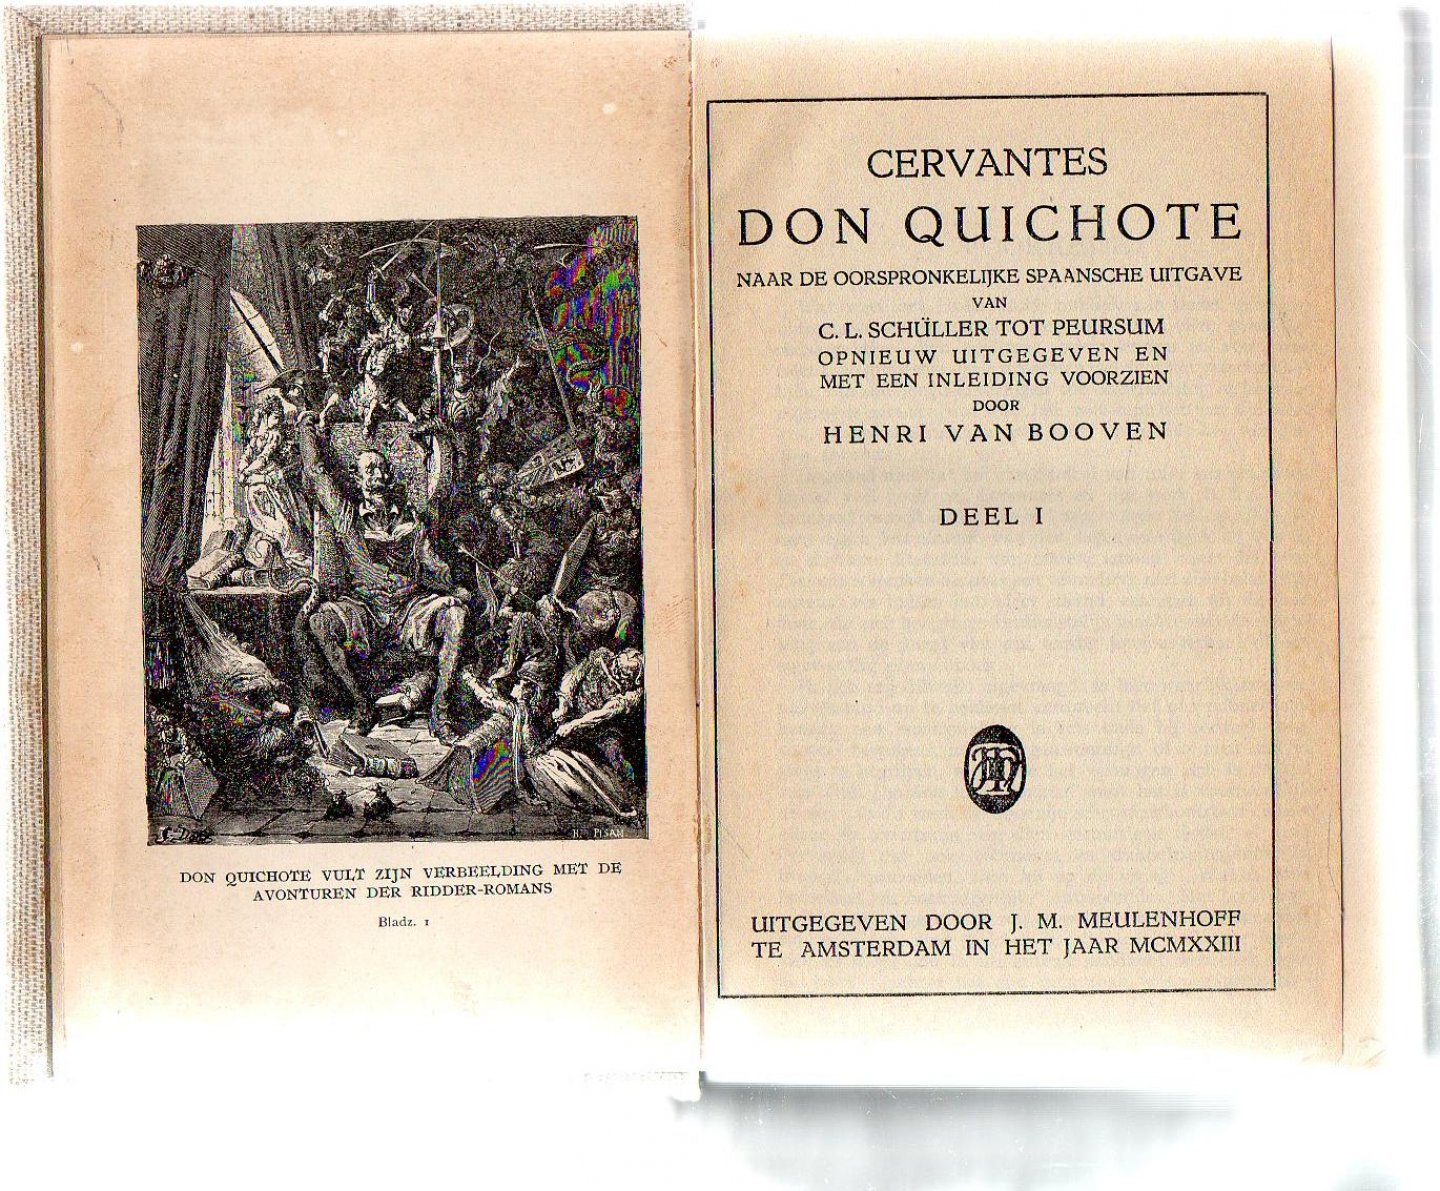  - DON QUICHOTE naar de oorspronkelijke Spaansche uitgave van CL Schuller tot Peursum opnieuw uitgegeven en met inleiding voorzien door HENRI van BOVEN .